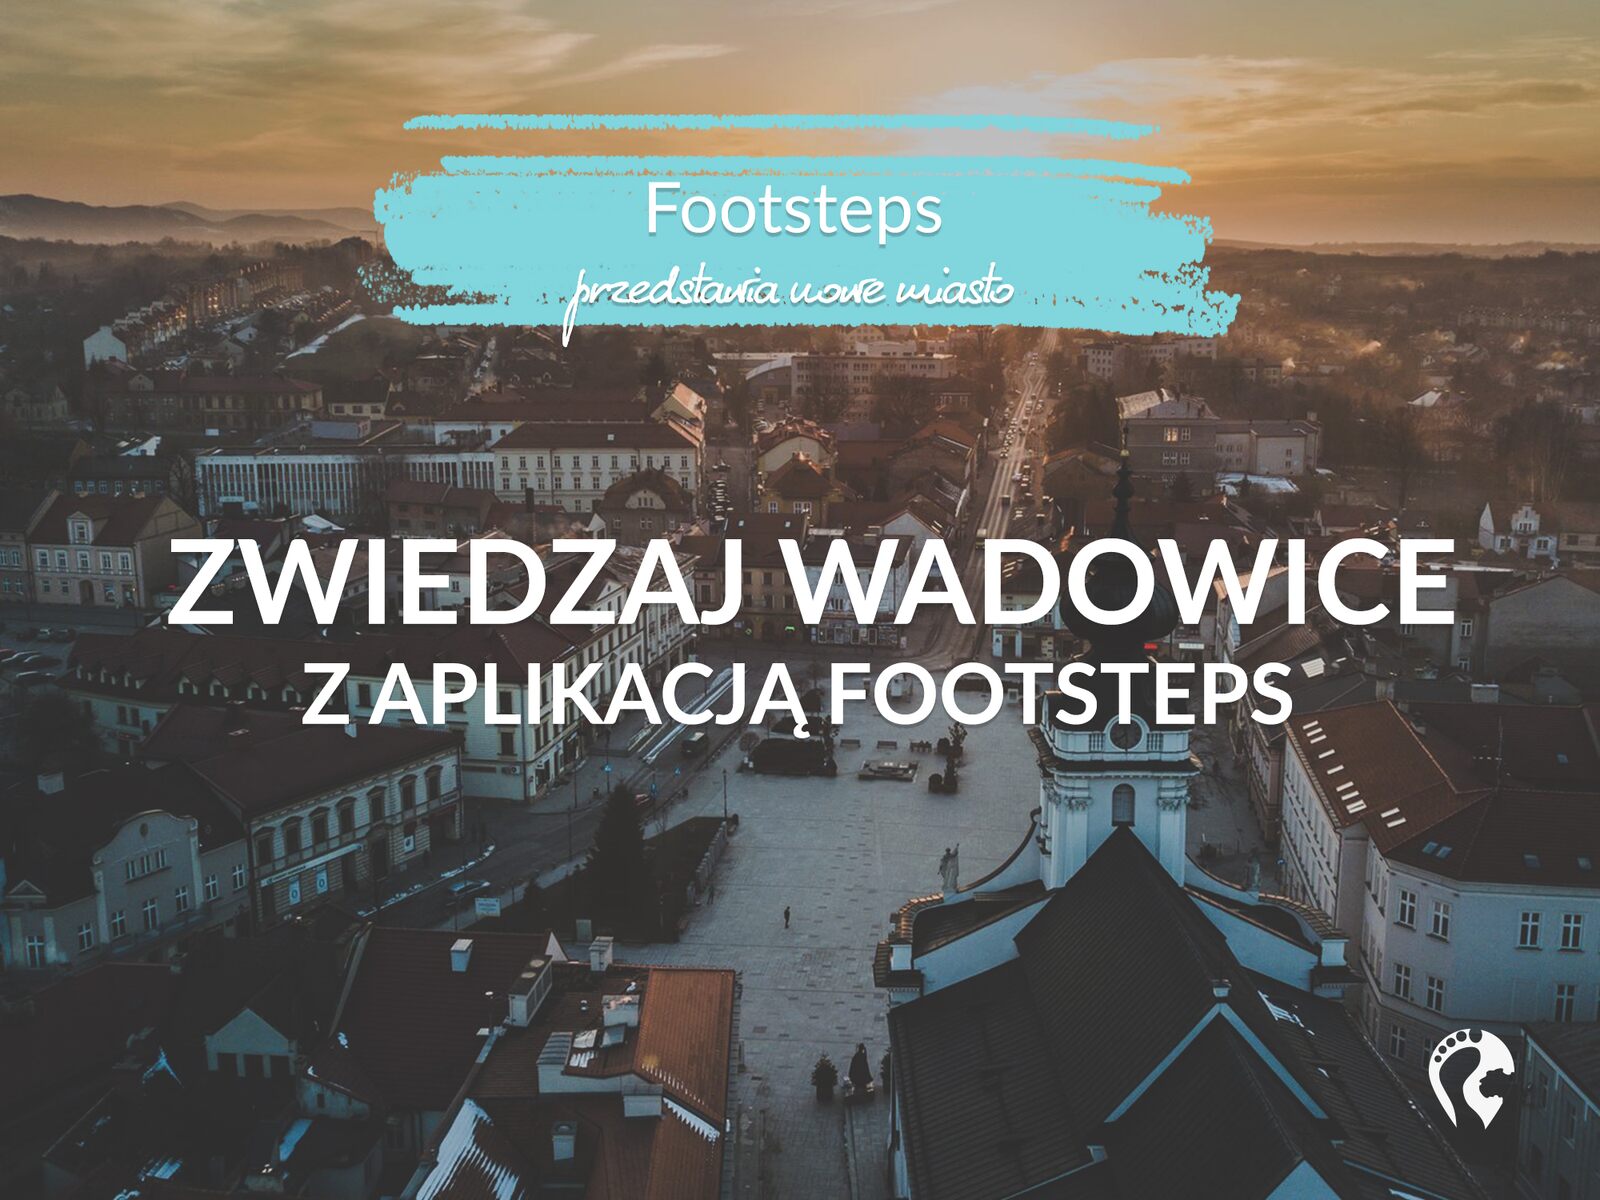 ZWIEDZAJ WADOWICE Z APLIKACJa FOOTSTEPS - Wadowice w aplikacji footsteps